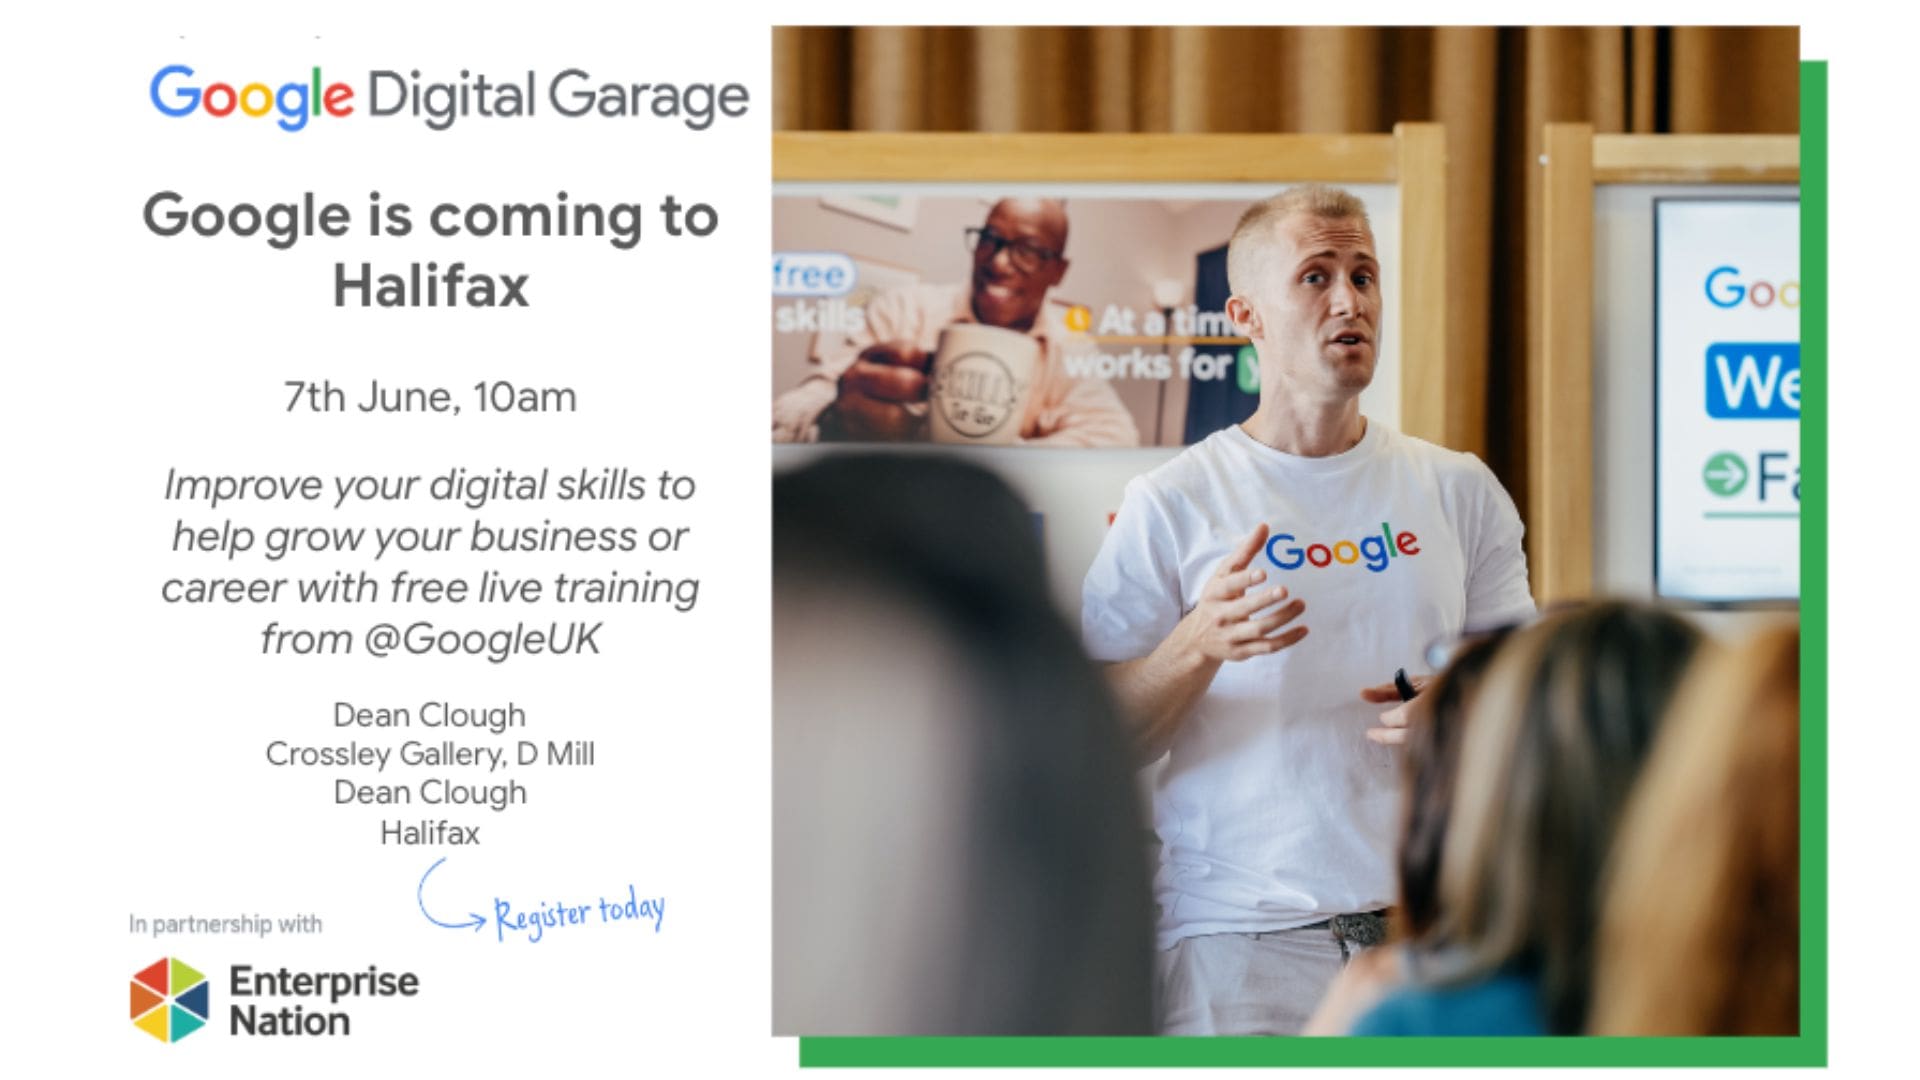 Google Digital Garage: Halifax